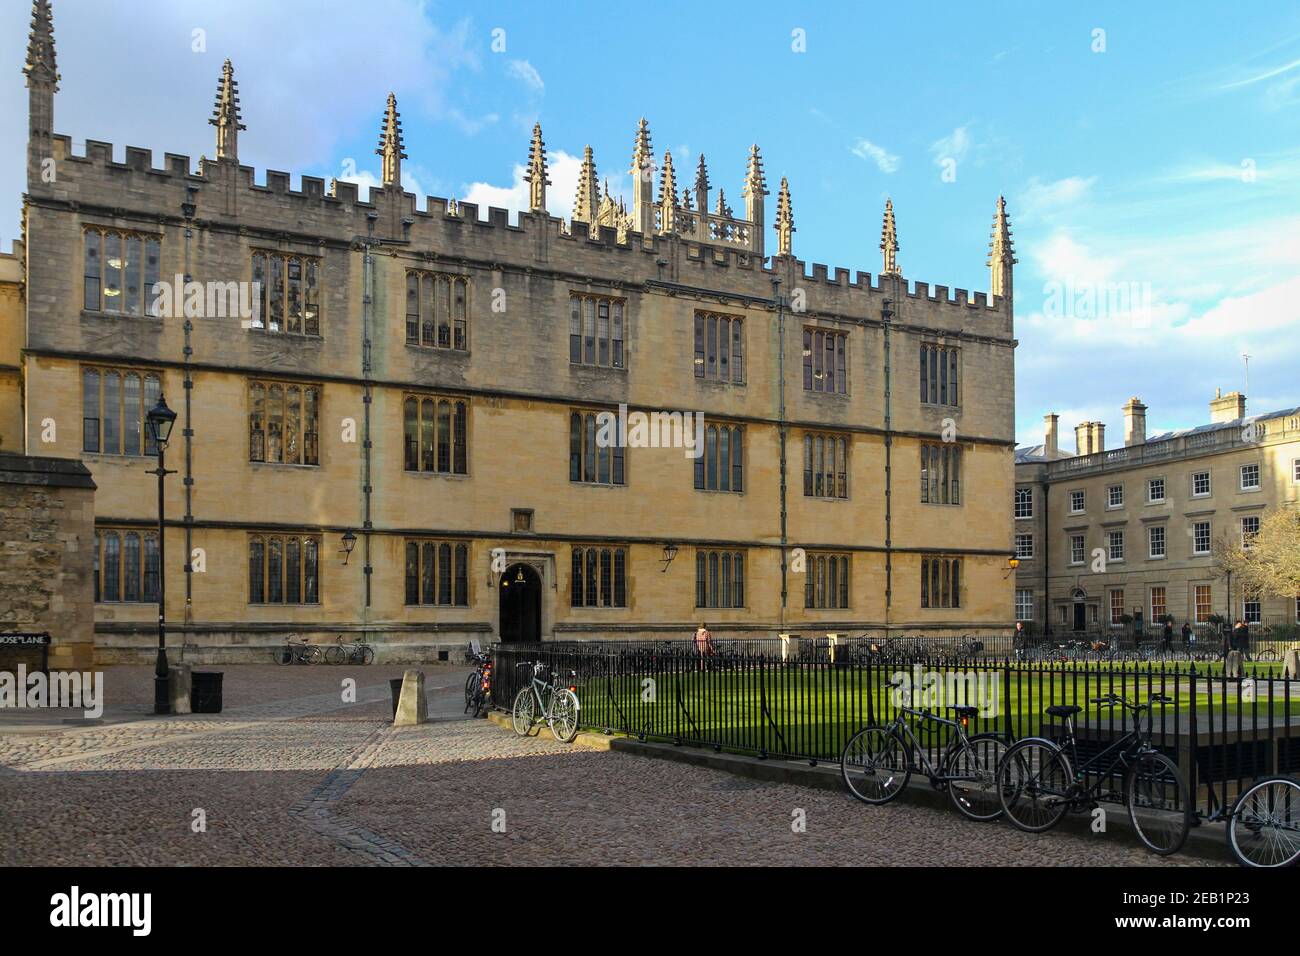 Edificio della biblioteca Bodleian in Radcliffe Square, Università di Oxford. Edifici storici in pietra. Terreno di ciottoli. La gente cammina. Biciclette a ringhiere Foto Stock